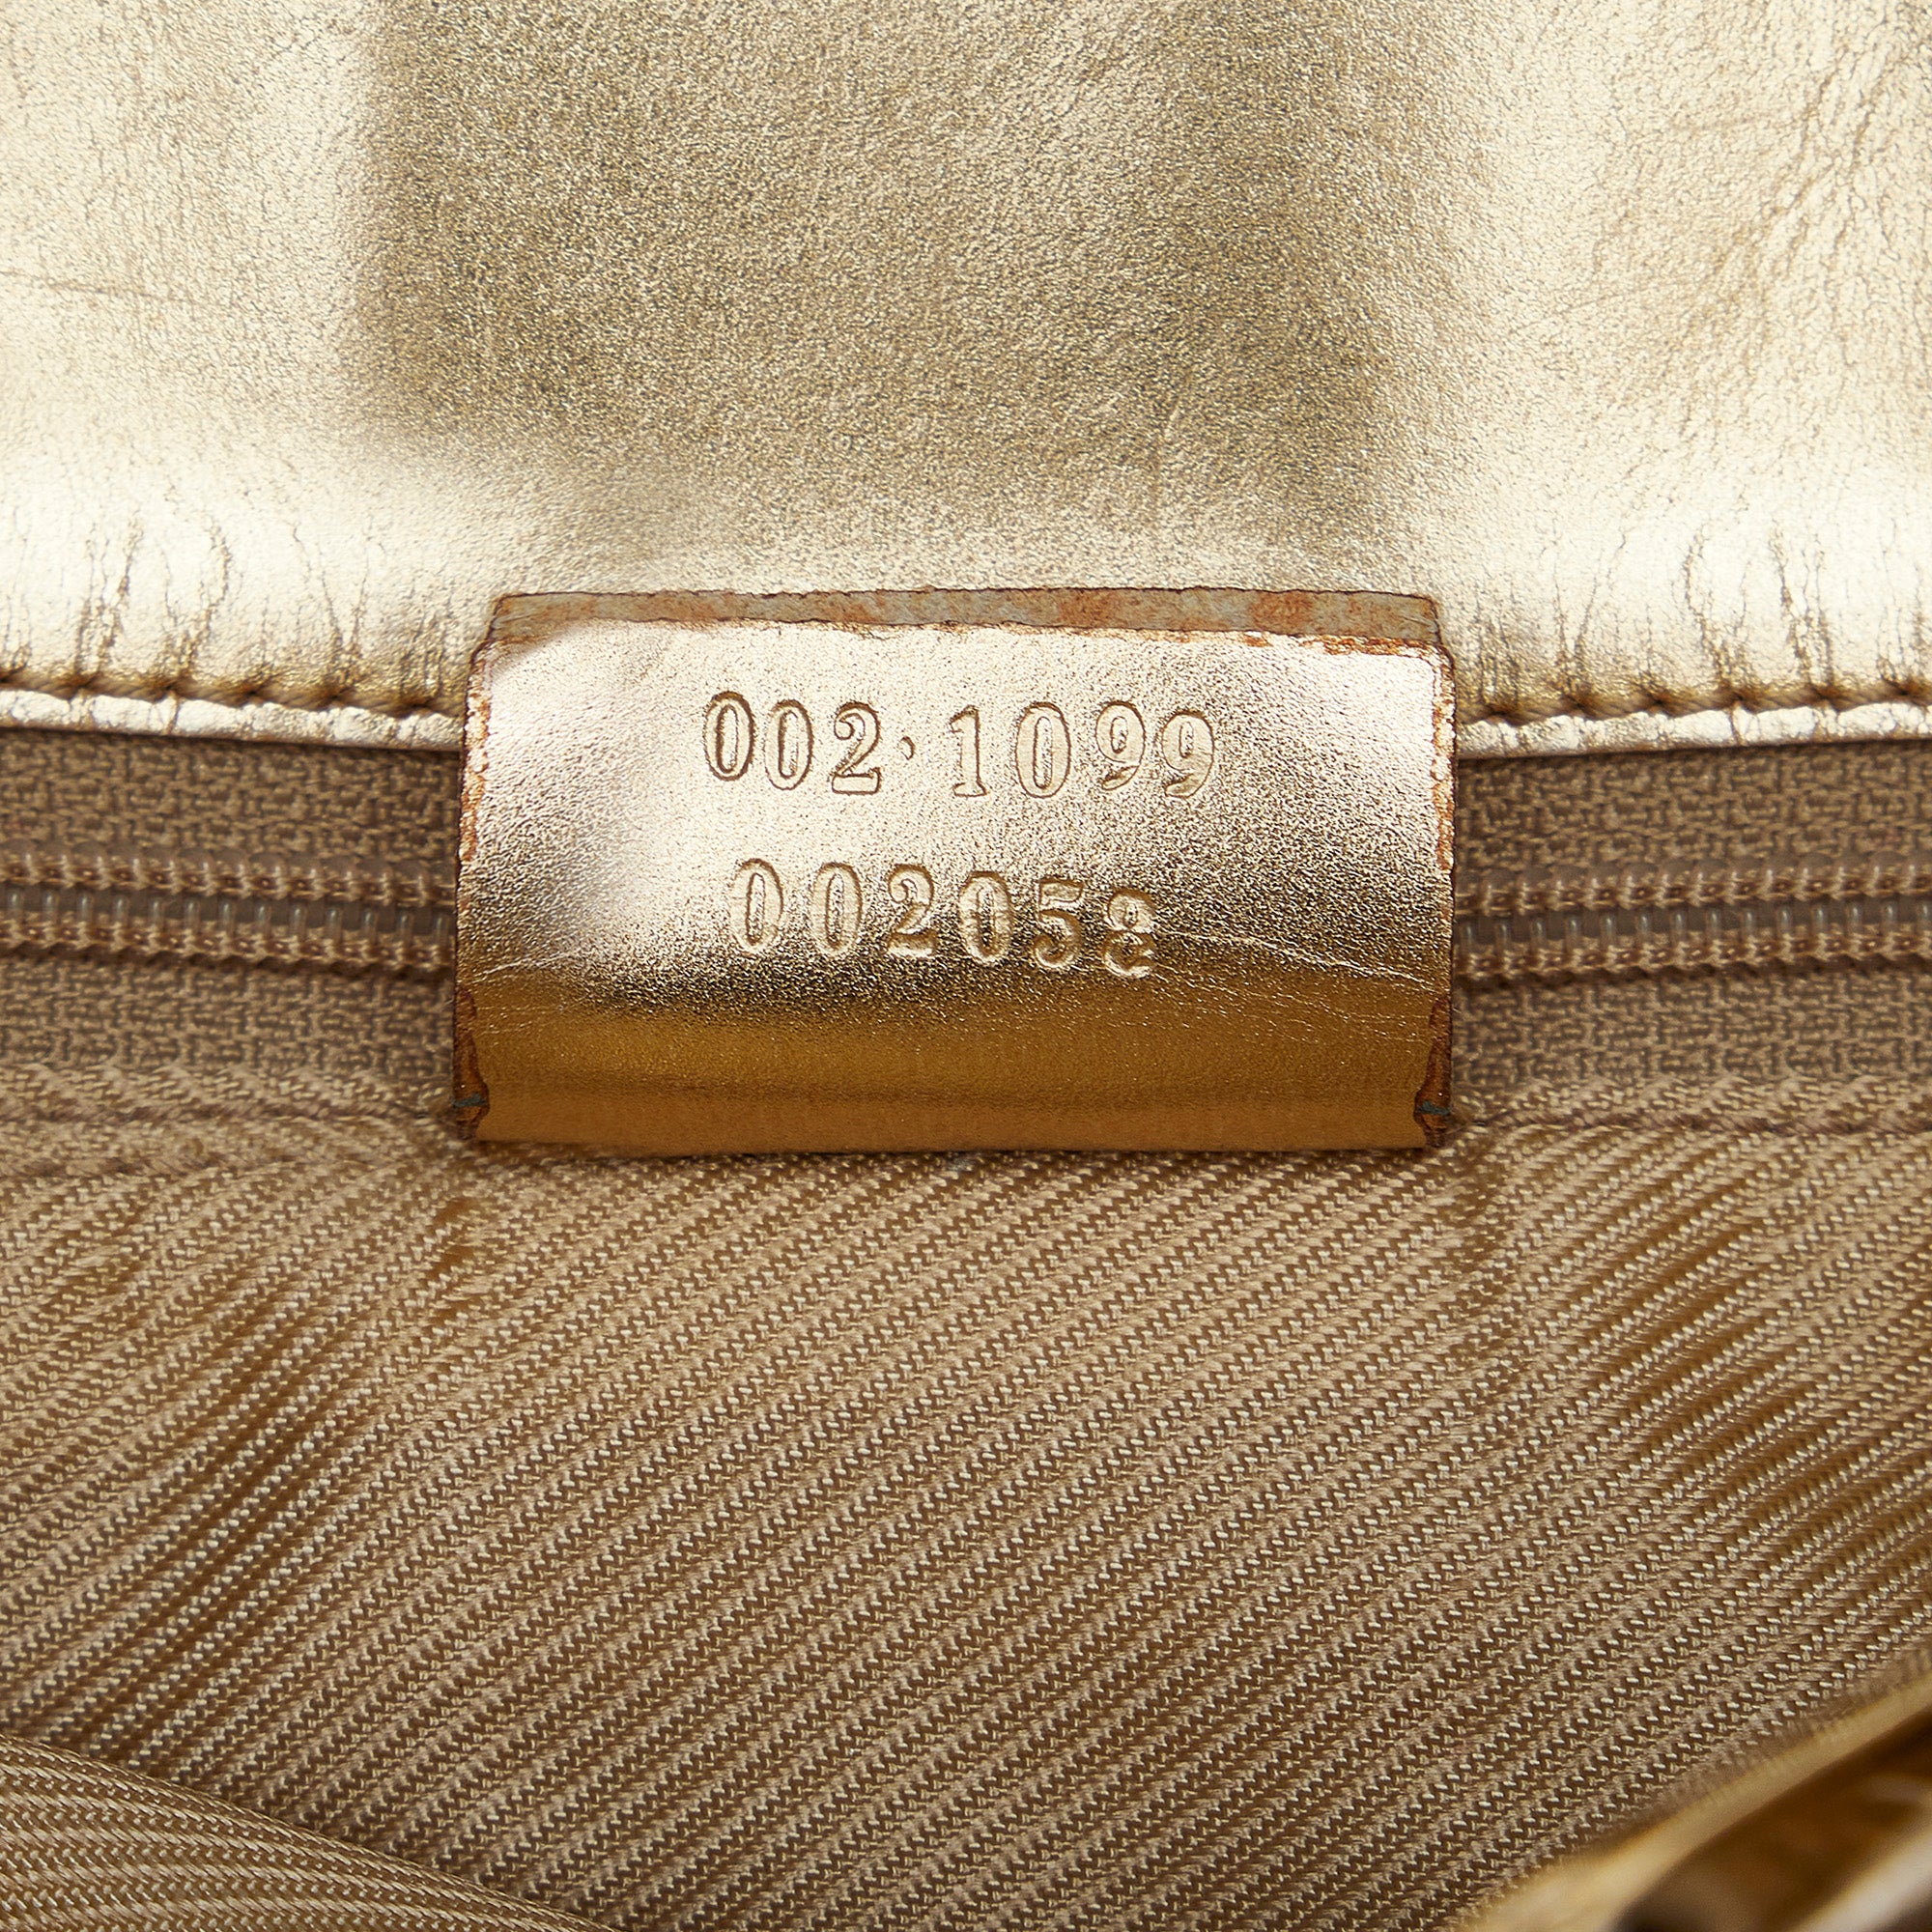 Gold Gucci GG Canvas Tote Bag – Designer Revival